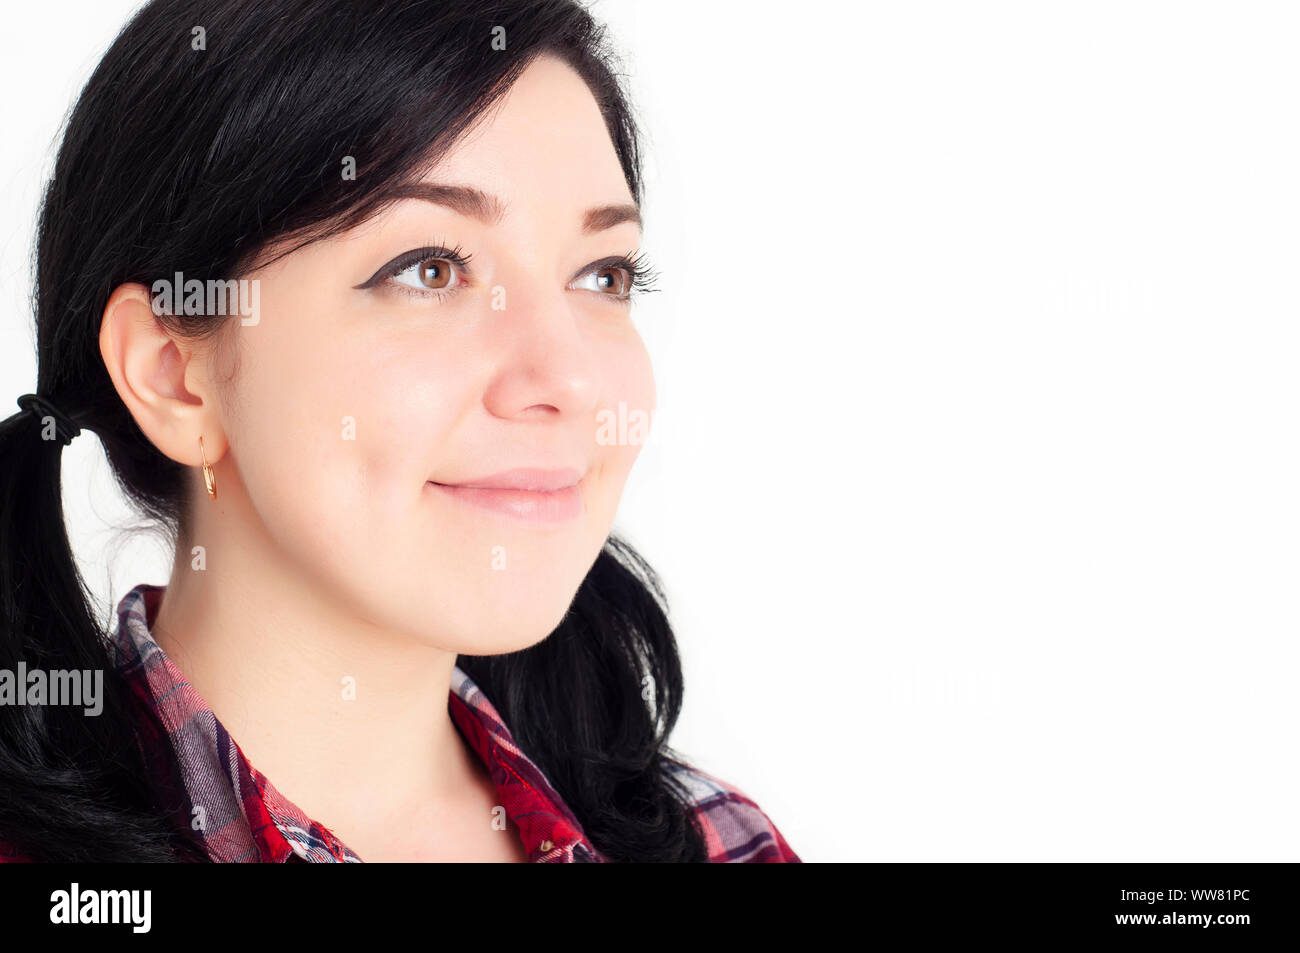 Ein junges fröhliches schönes Brünette Mädchen mit niedlichen Grübchen auf ihren Wangen lächeln und freut sich mit Freude und Erwartung in ihren Augen. Weißer Hintergrund. Stockfoto